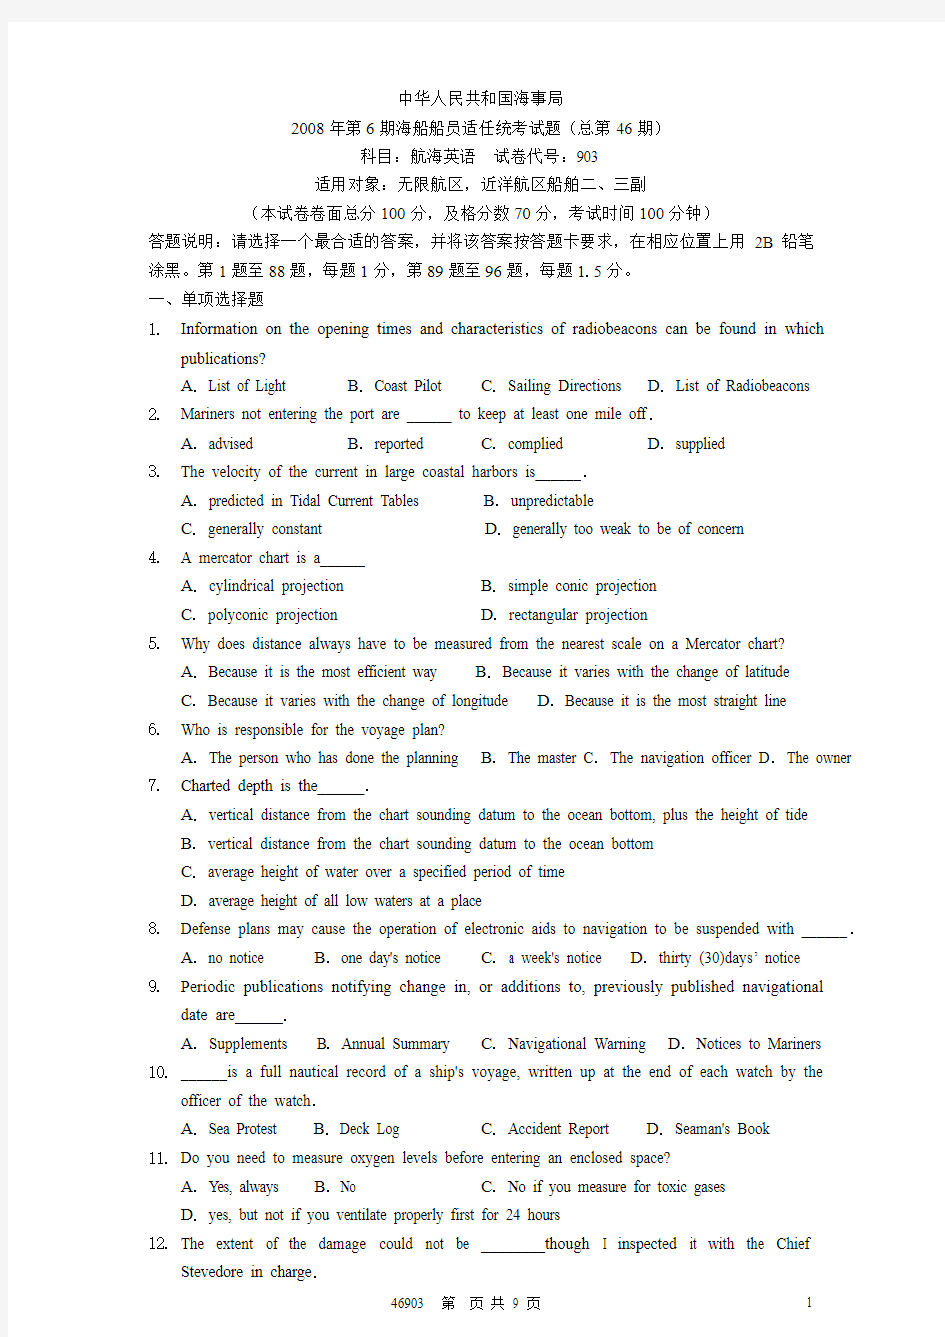 中华人民共和国海事局第46期航海英语真题(附答案)